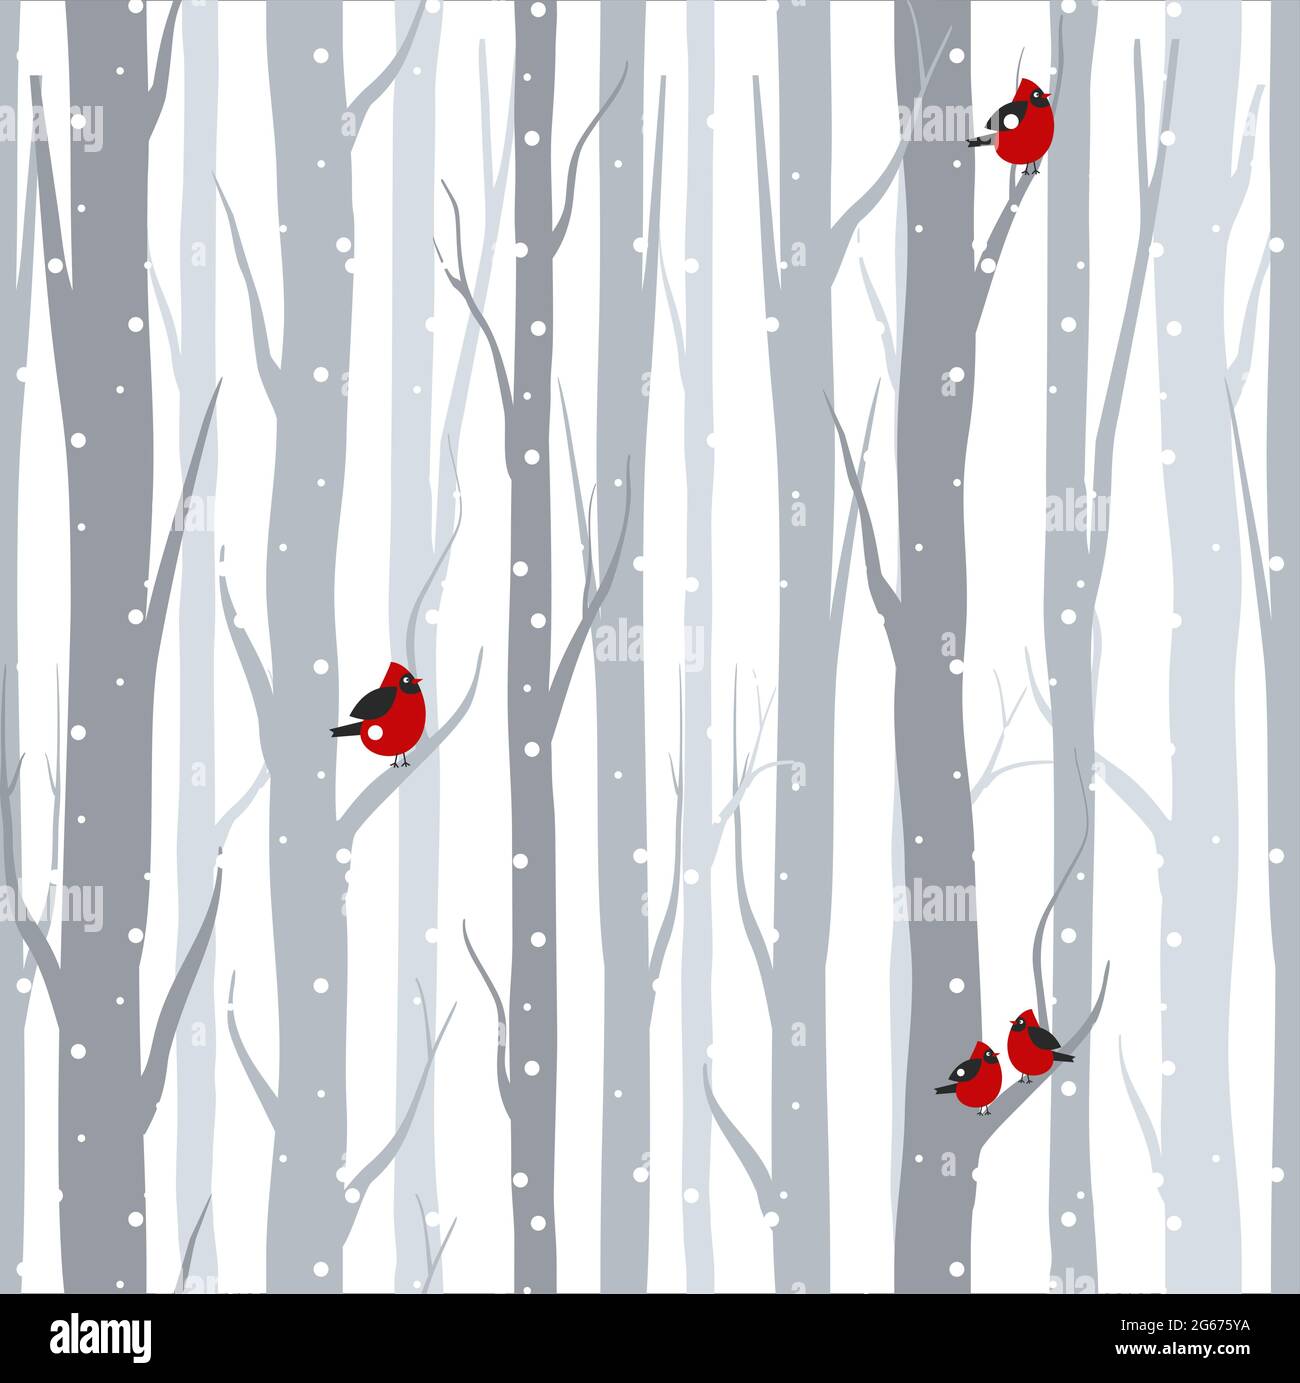 Vektor-Illustration von nahtlosen Muster mit grauen Bäumen Birken und roten Vögeln im Winter mit Schnee in flachen Cartoon-Stil. Stock Vektor